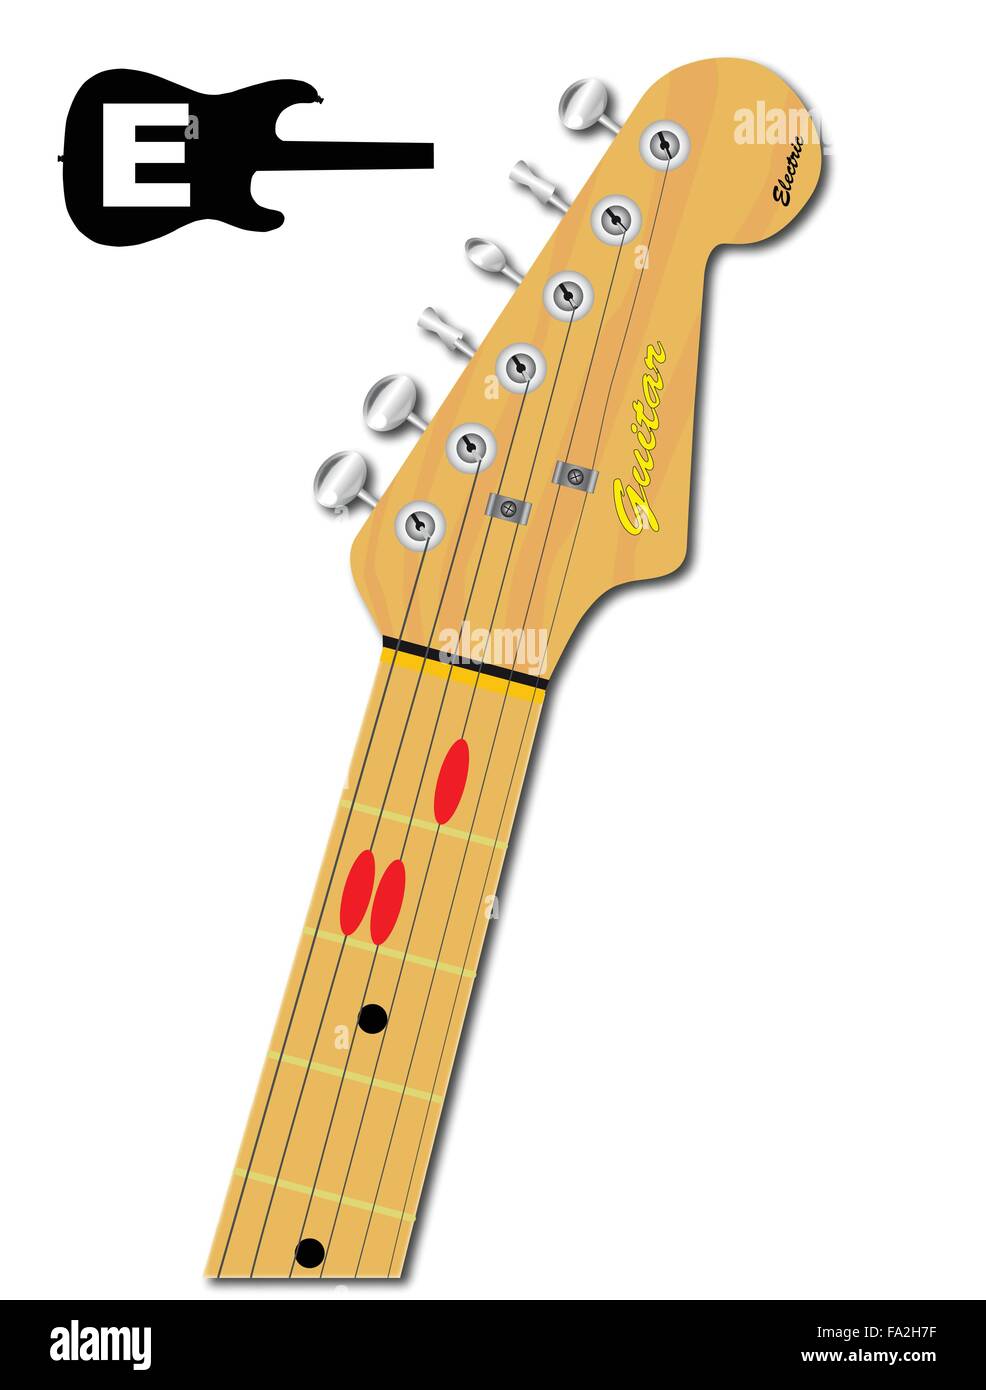 Eine e-Gitarrenhals mit der Akkord-Form für E-Dur mit roten Tasten angegeben Stock Vektor